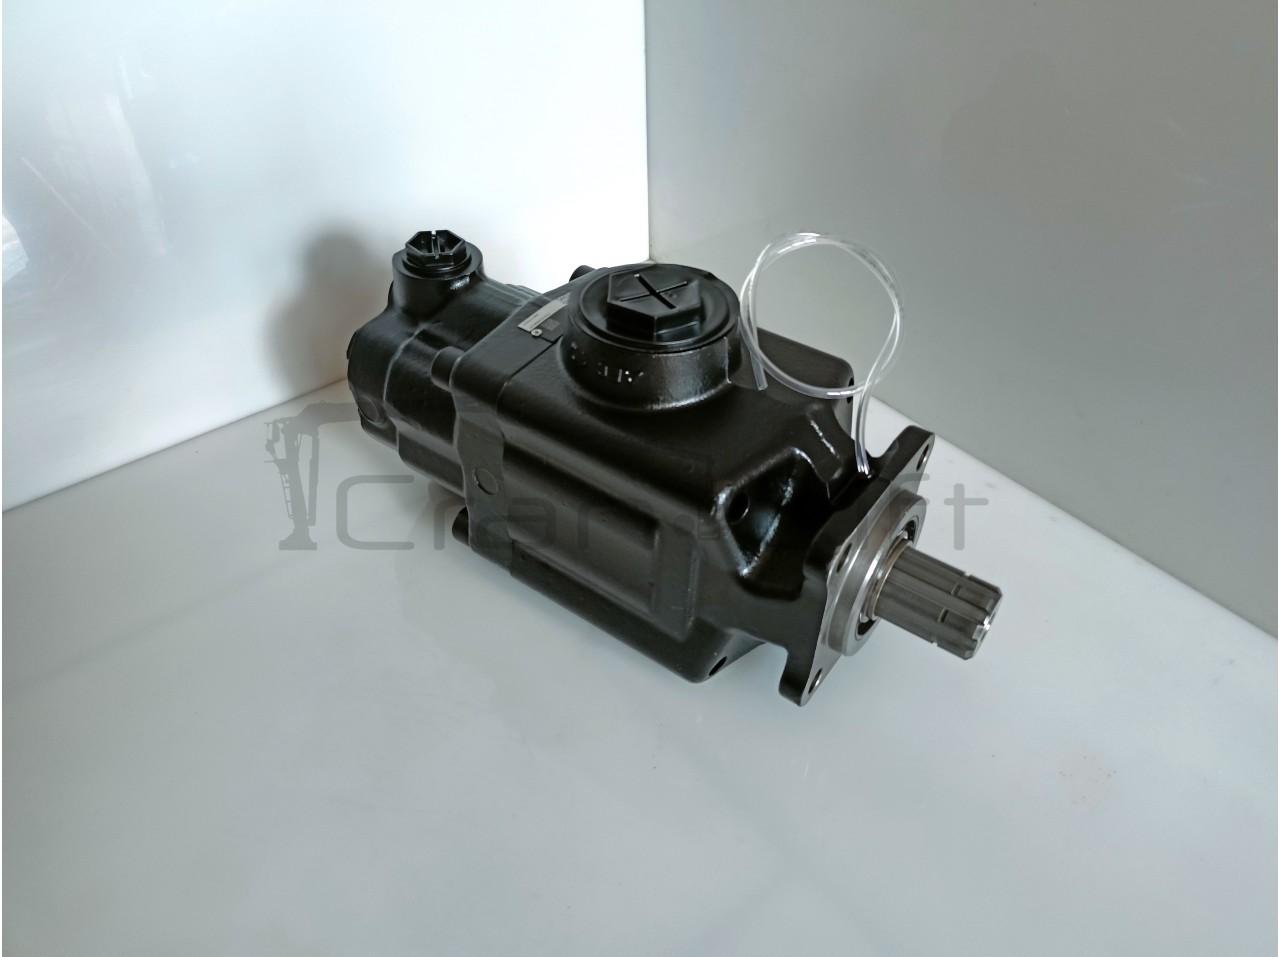 Pompa hydrauliczna tłoczkowa Hydro Leduc PA2x57